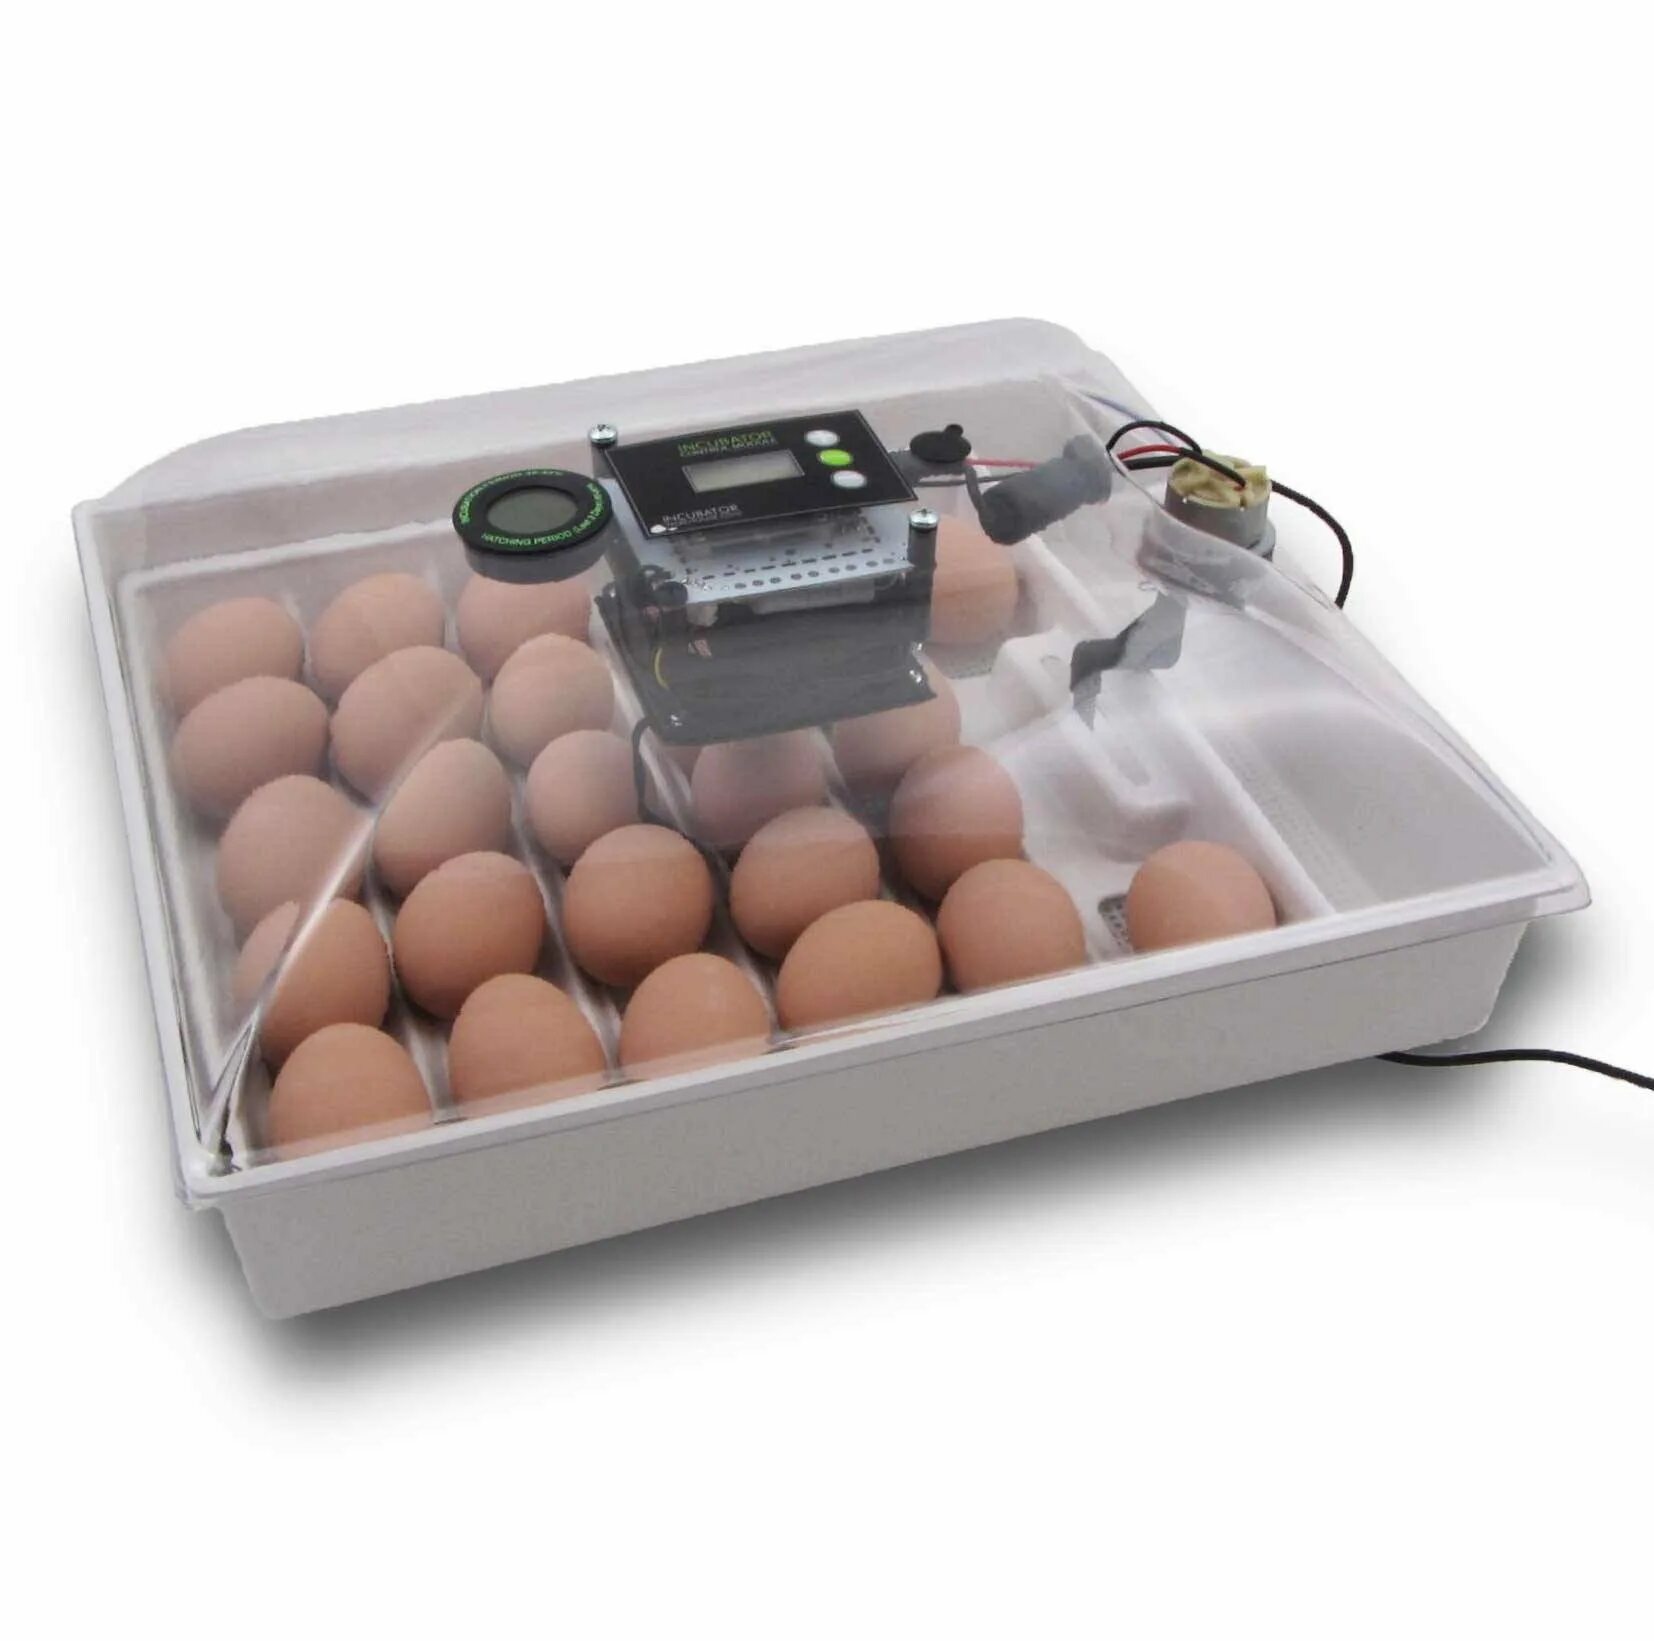 Цифровые инкубаторы купить. Инкубатор Egg incubator. Инкубатор FLORAFLEX incubator Kit. Инкубатор SITITEK 36. Кв400 binger инкубатор для яиц.